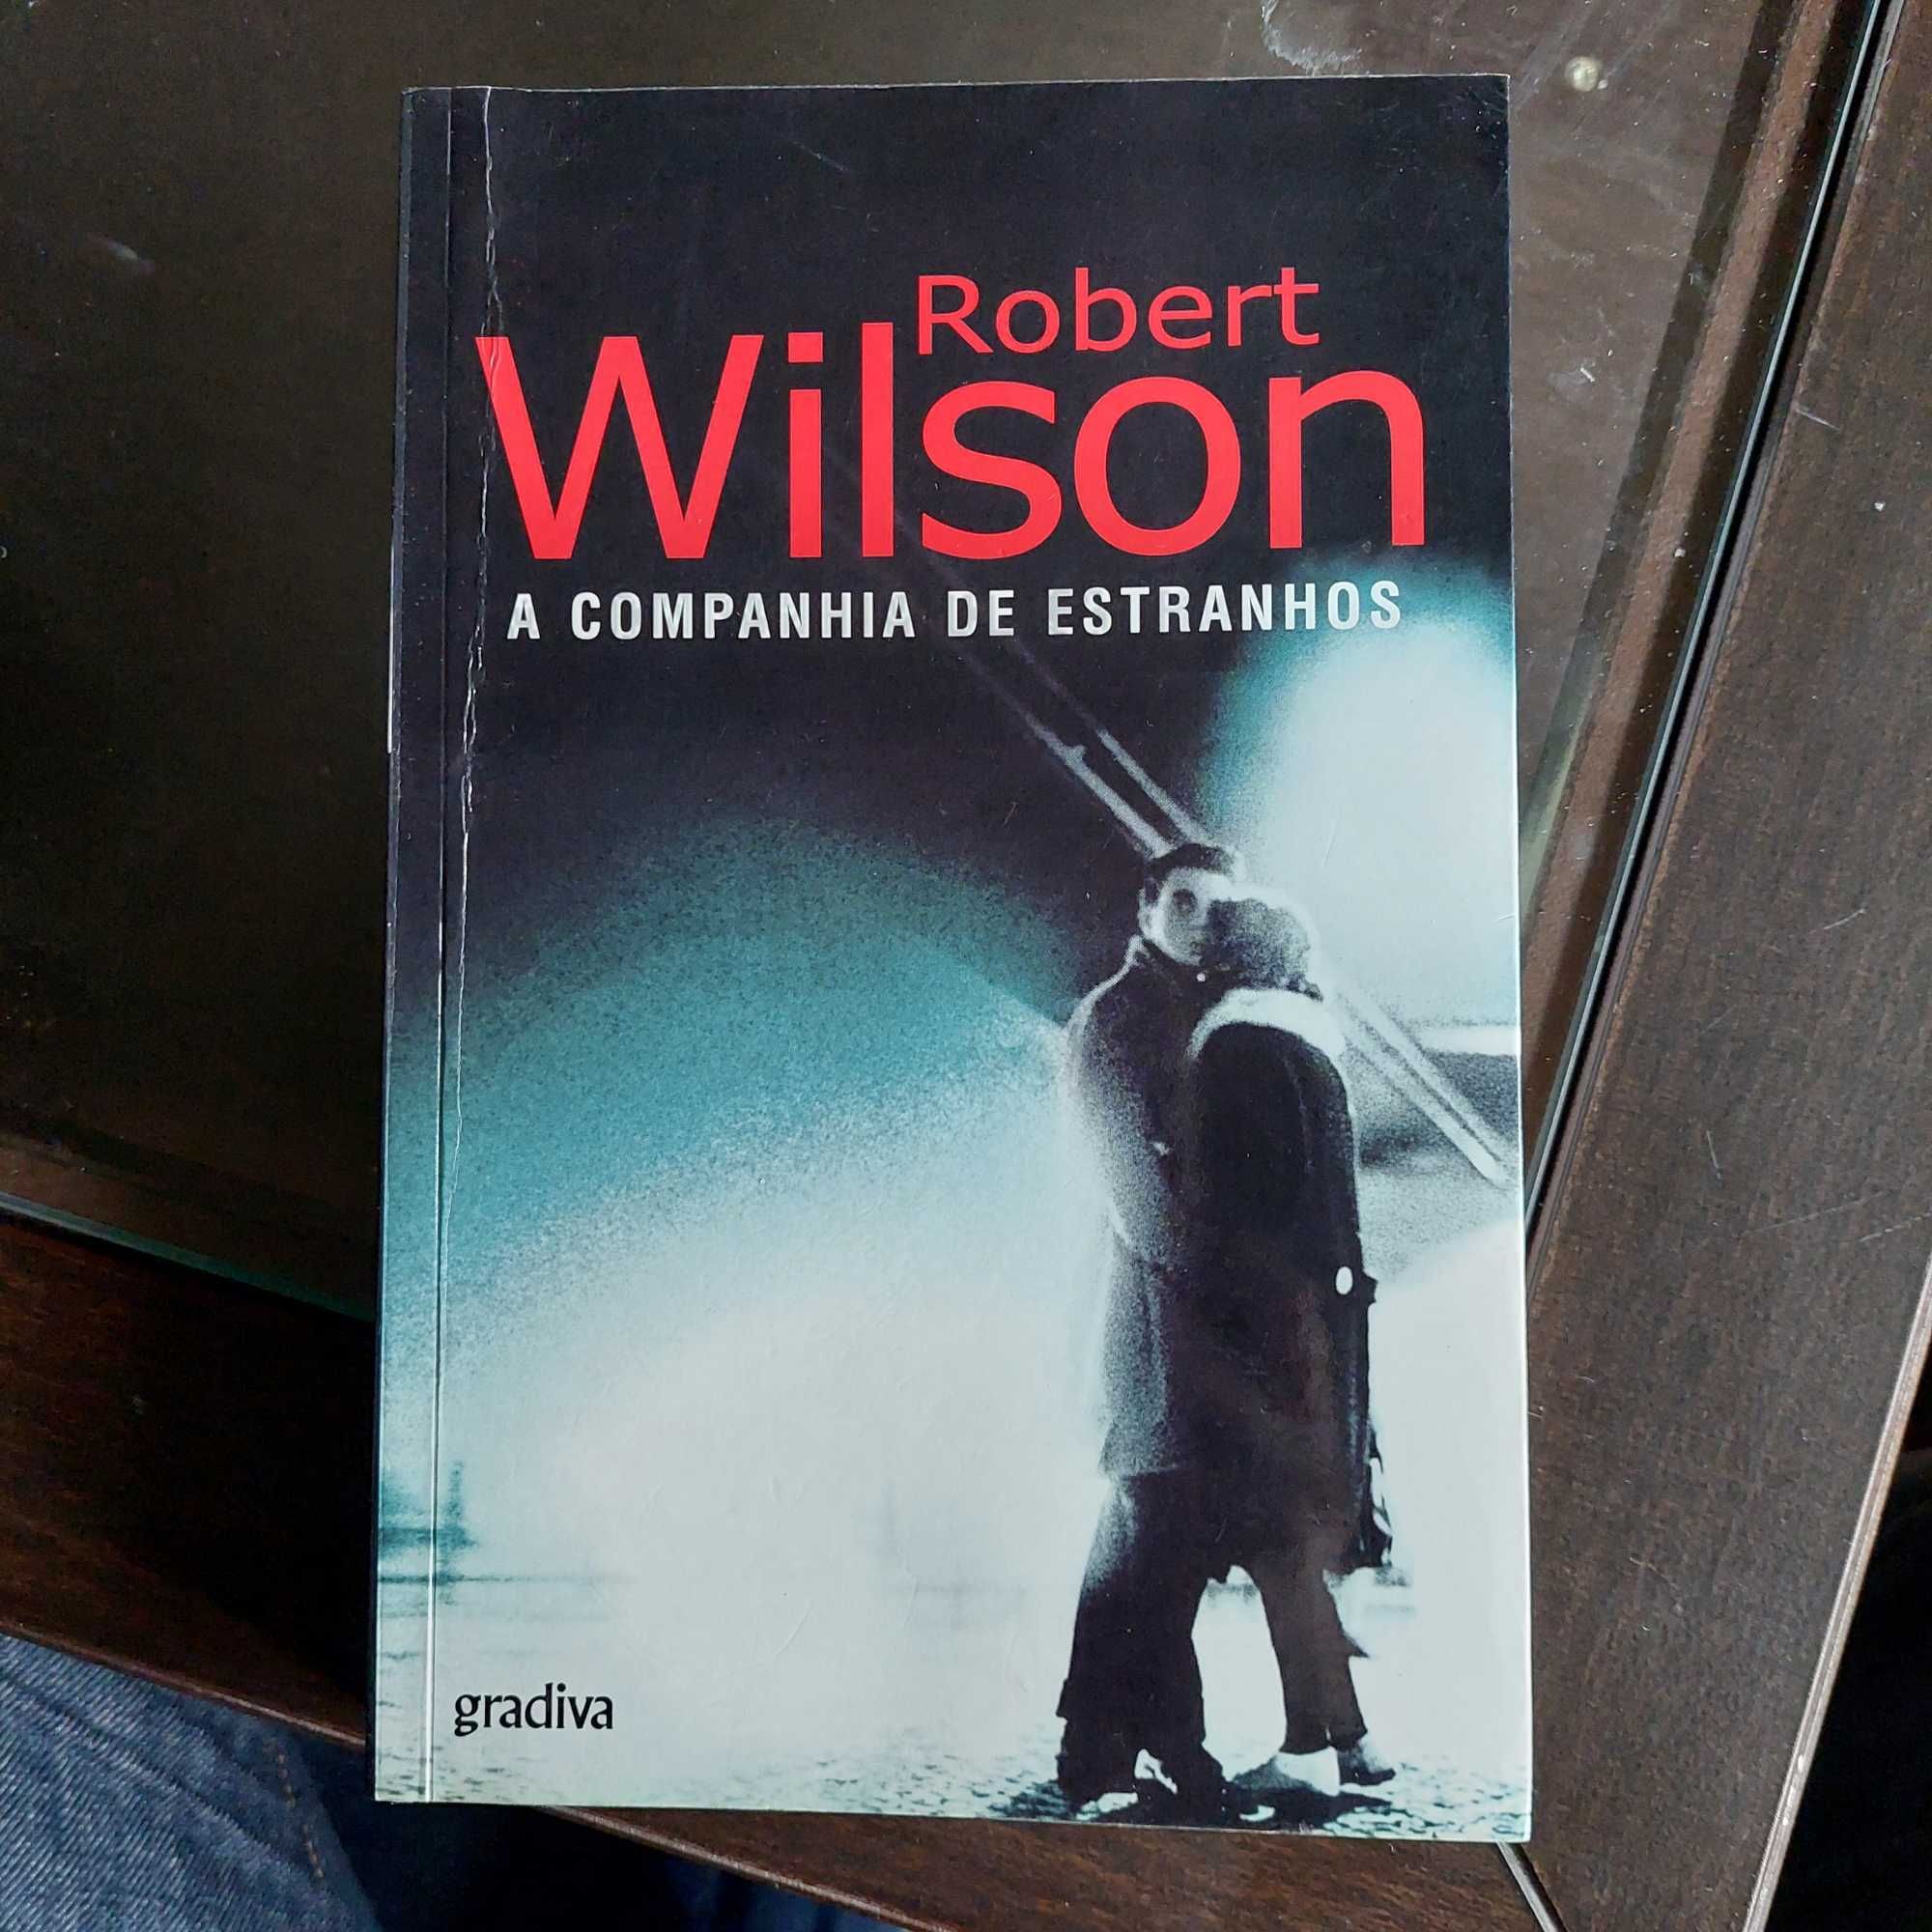 Robert Wilson - A Companhia de Estranhos